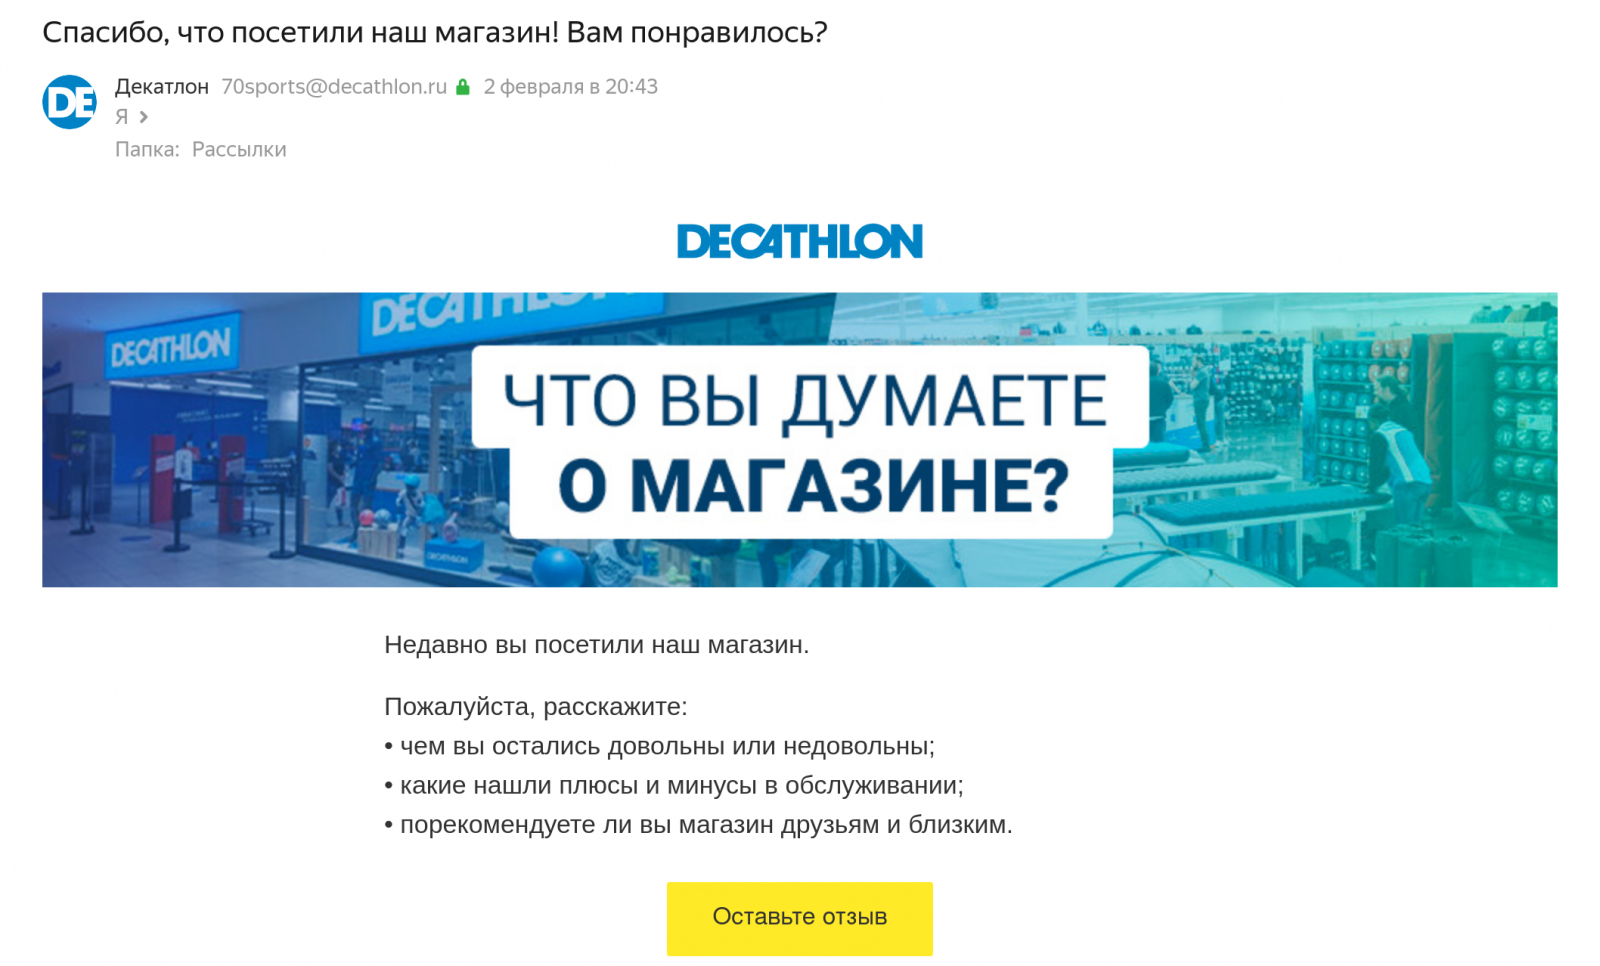 Магазин Decathlon просит клиентов оставить отзыв